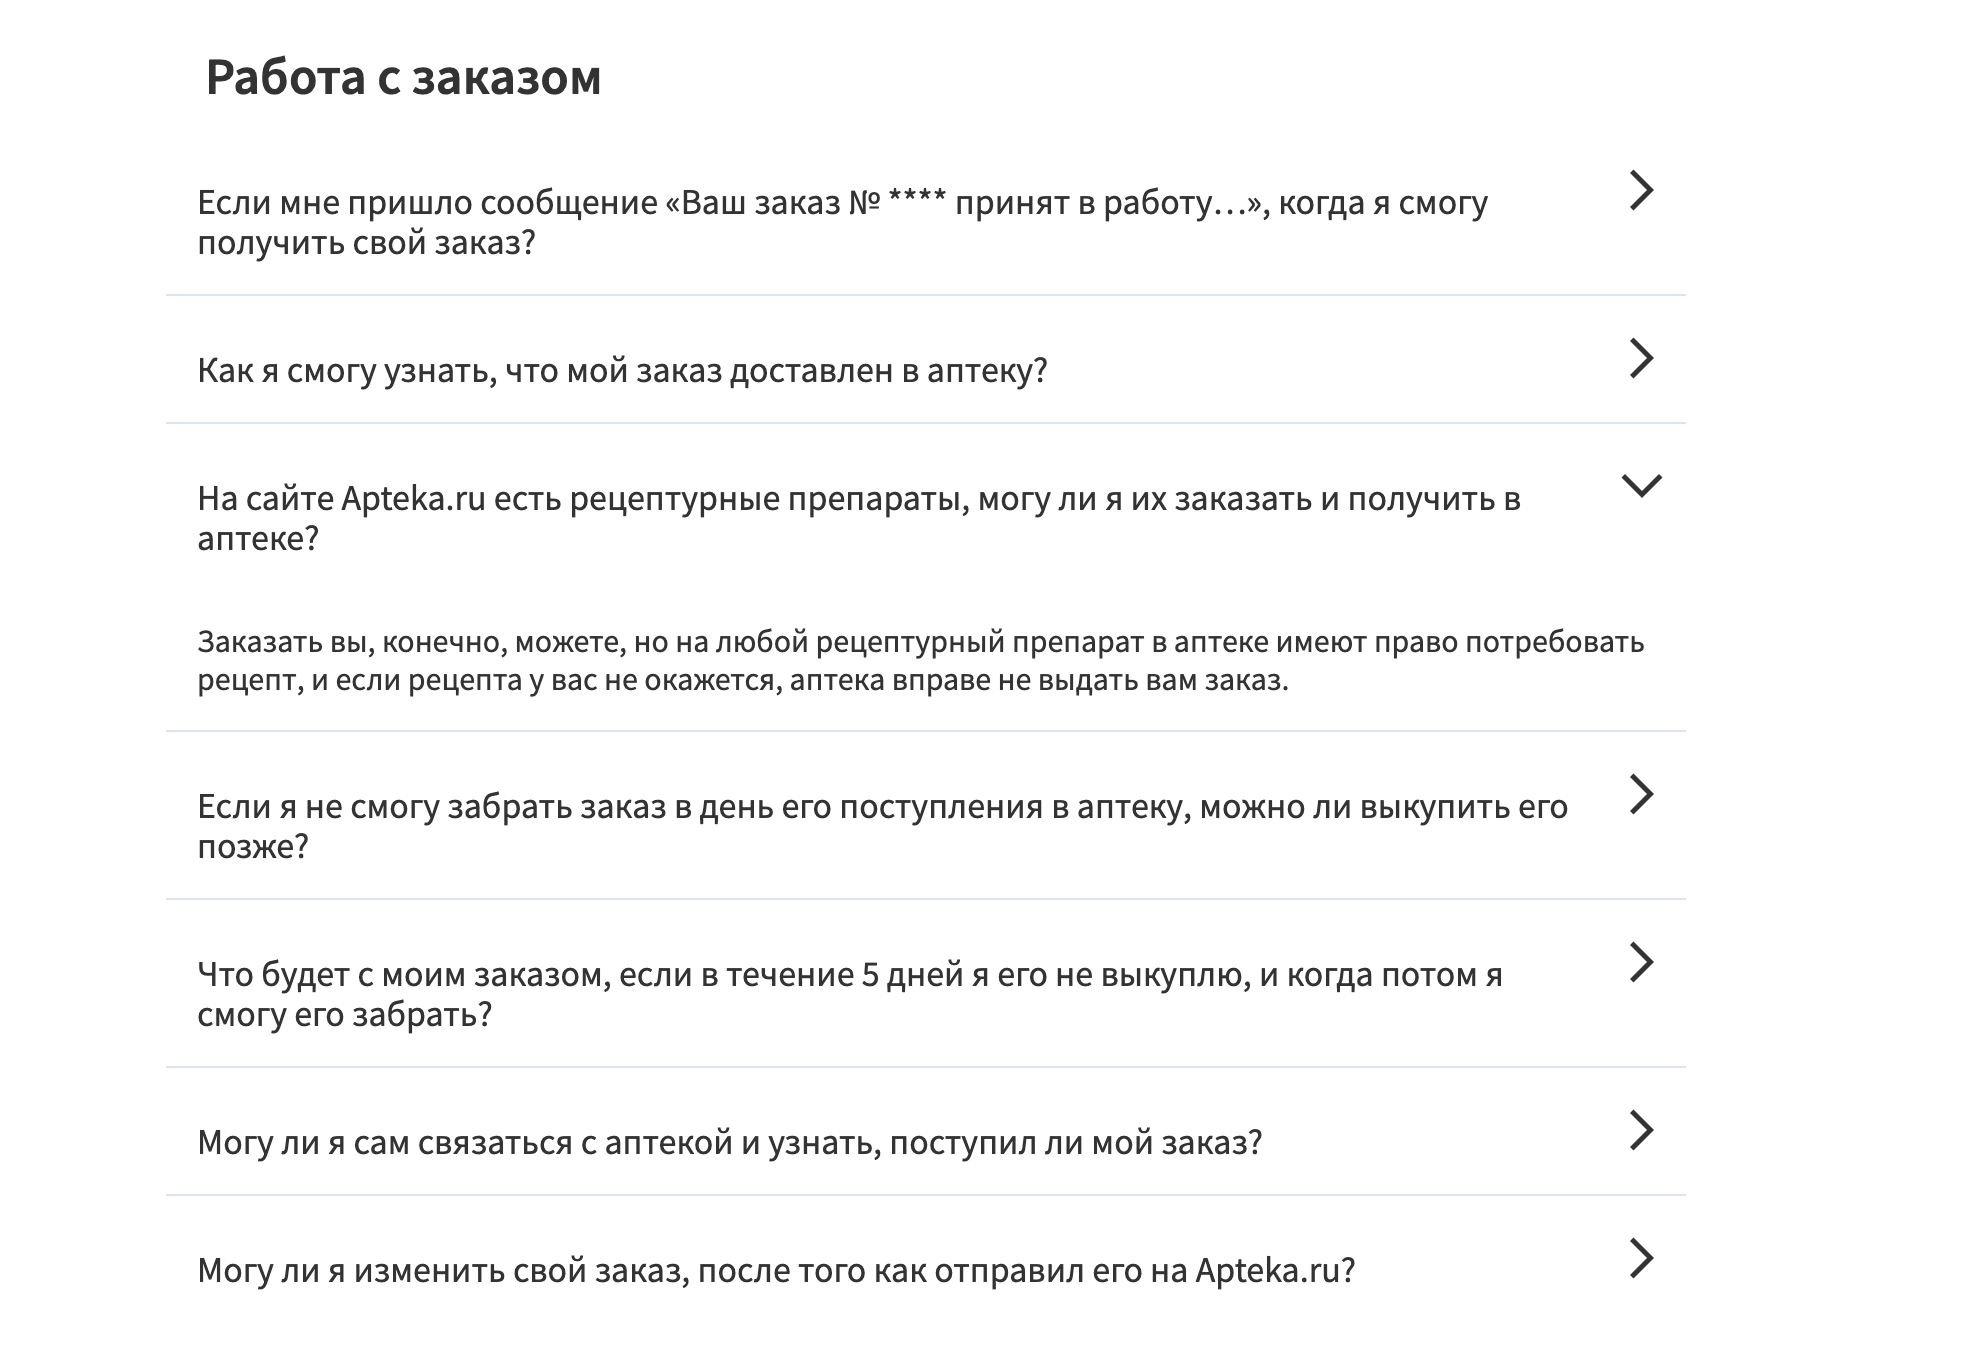 Как получить лекарства по рецепту в Apteka.ru